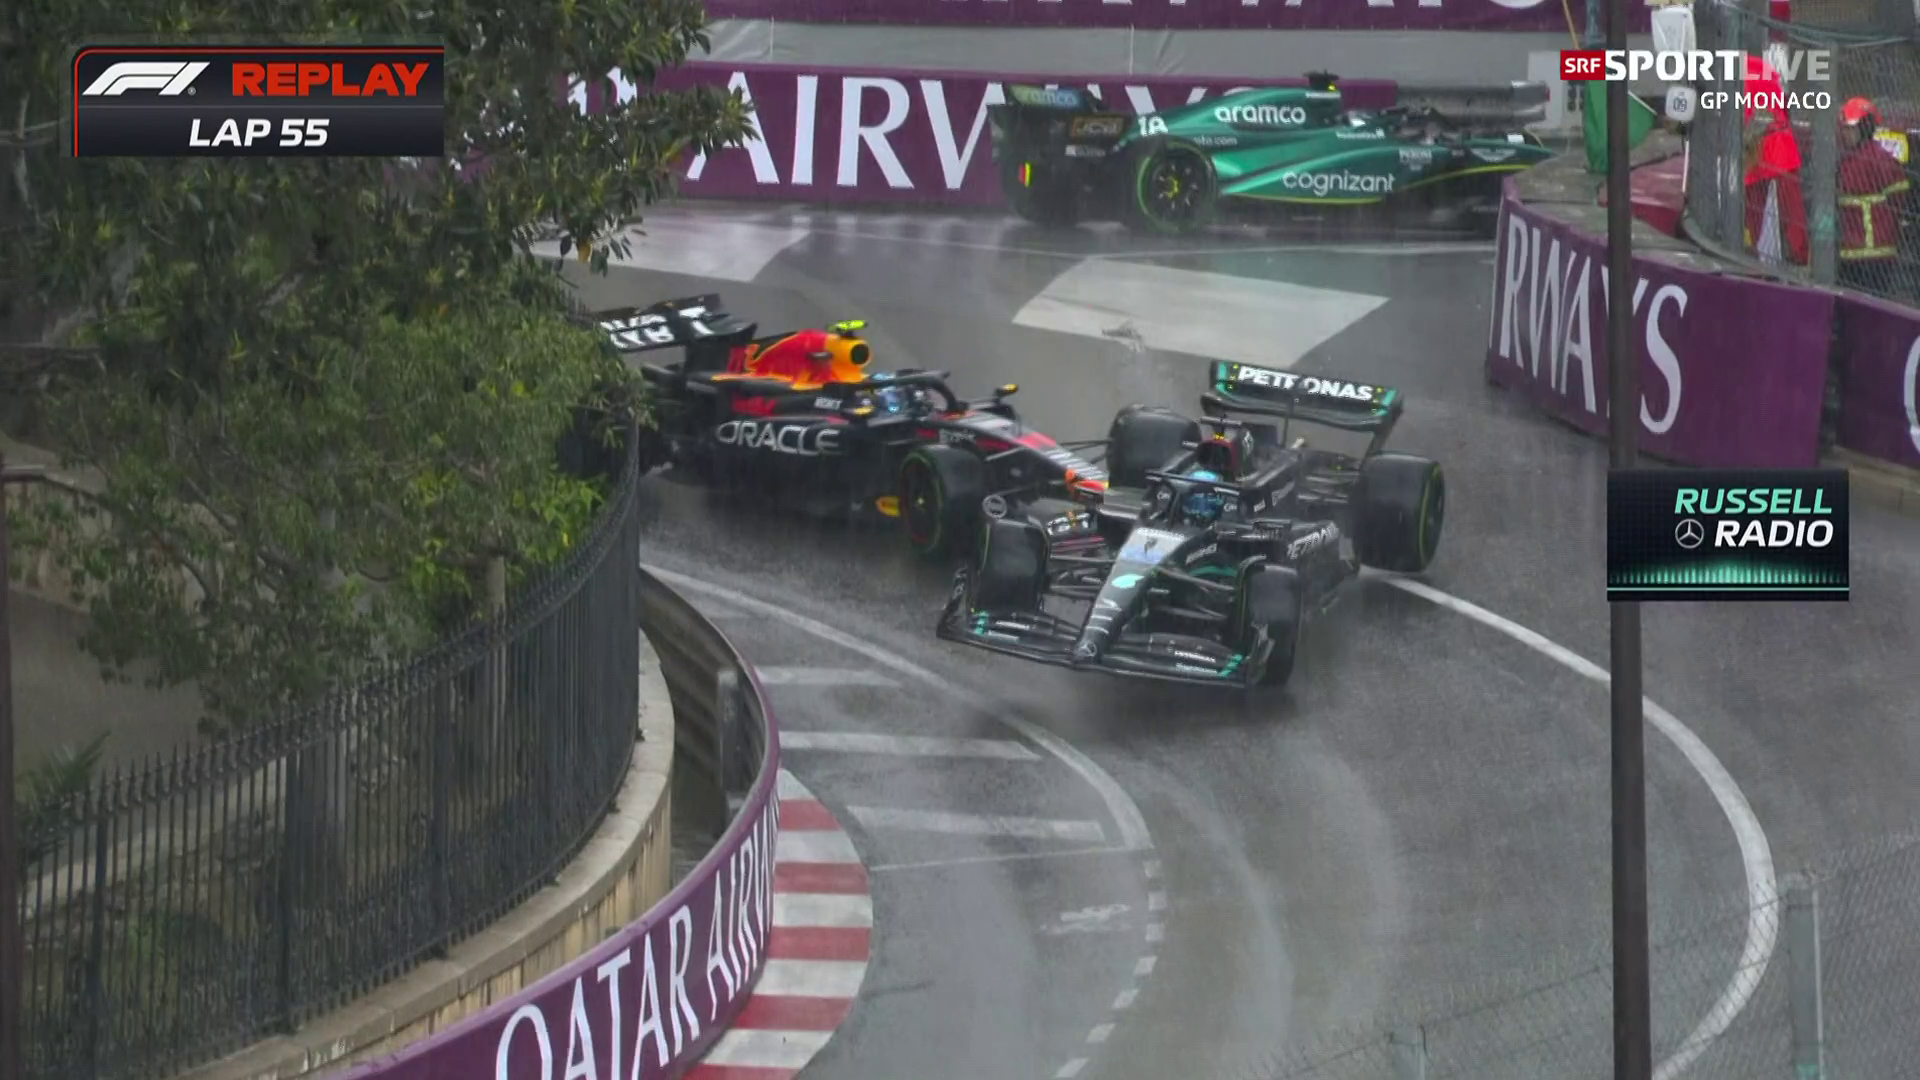 Sieg am Formel-1-GP Monaco - Auch der Stadtkurs und Regen stoppen Verstappen nicht - Sport